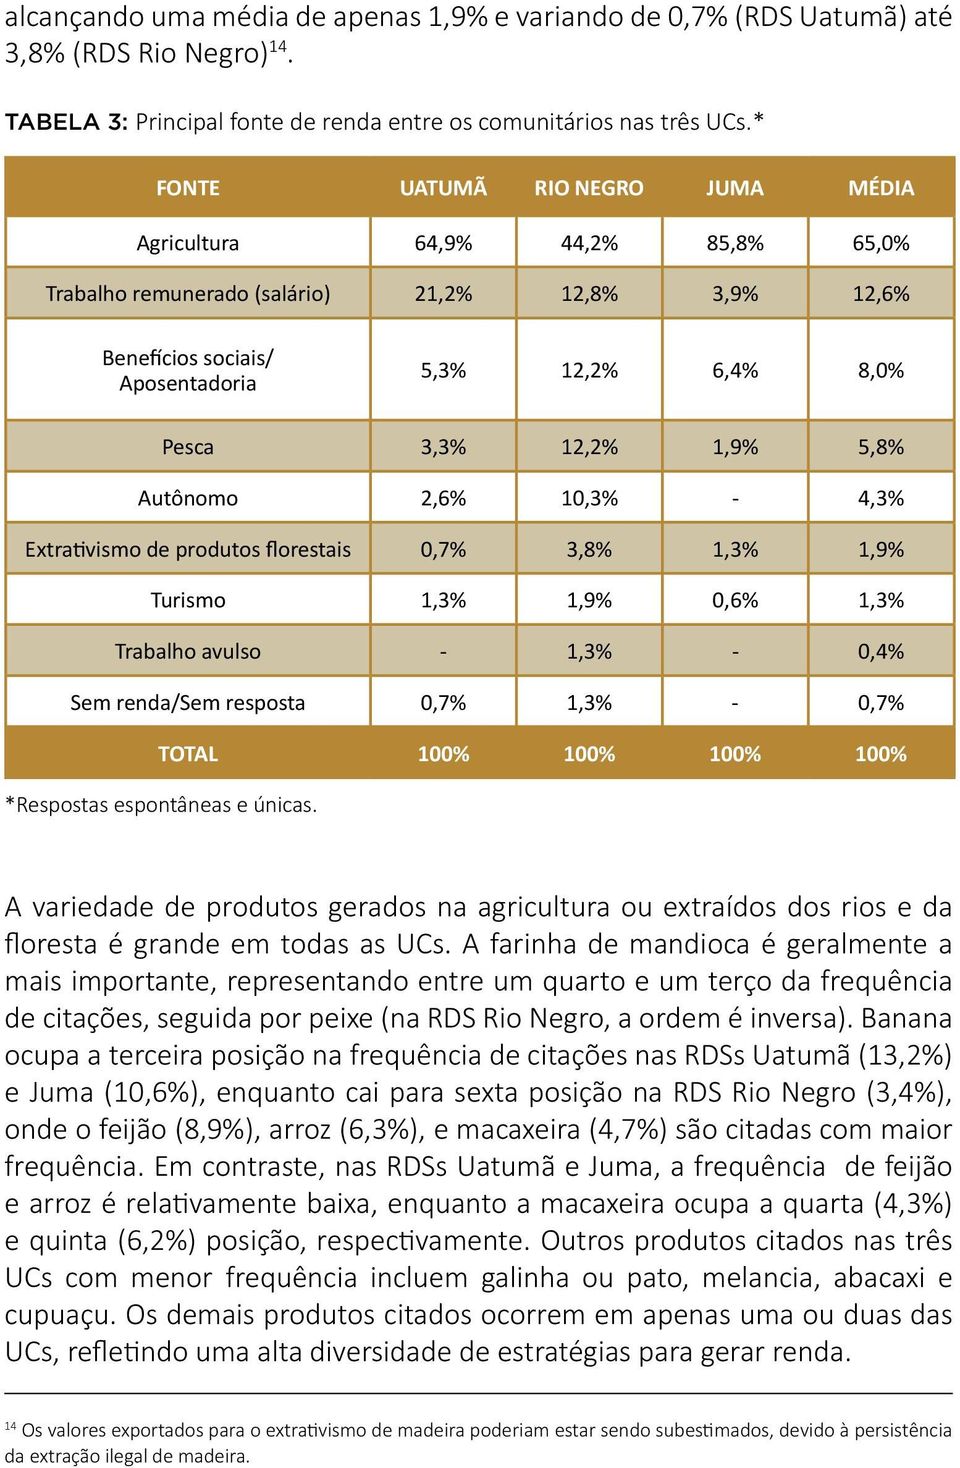 1,9% 5,8% Autônomo 2,6% 10,3% - 4,3% Extrativismo de produtos florestais 0,7% 3,8% 1,3% 1,9% Turismo 1,3% 1,9% 0,6% 1,3% Trabalho avulso - 1,3% - 0,4% Sem renda/sem resposta 0,7% 1,3% - 0,7% TOTAL